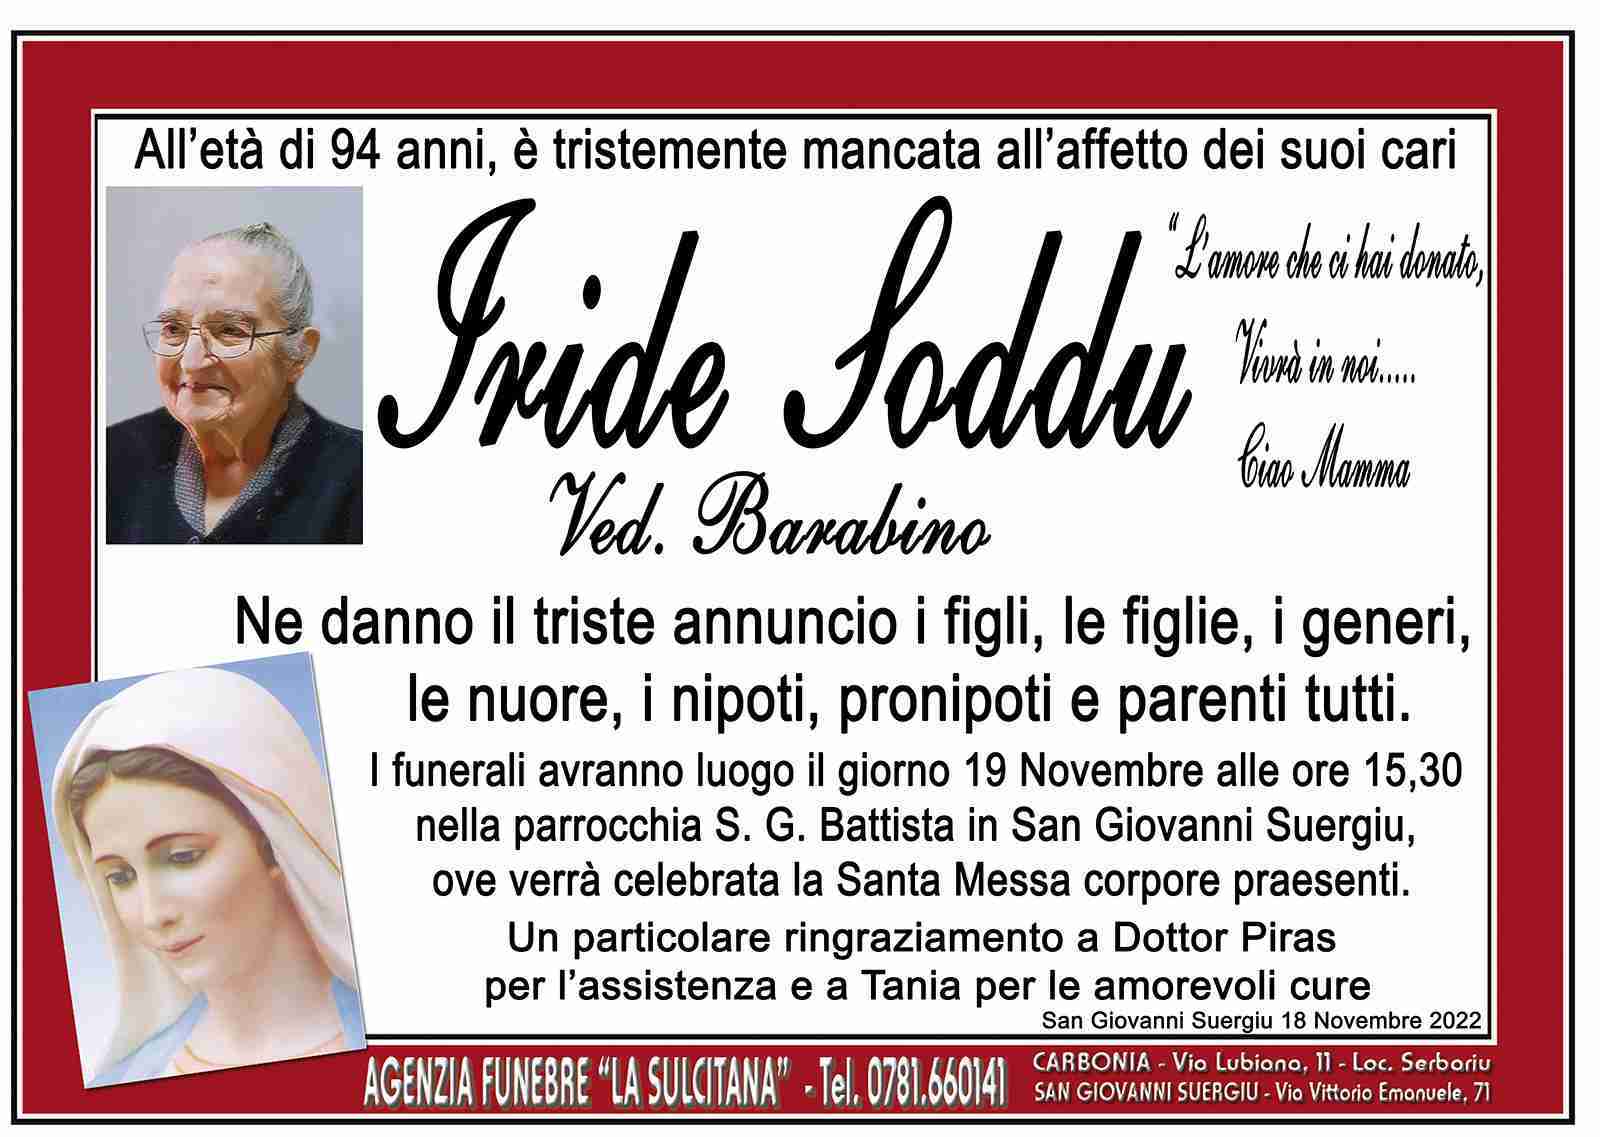 Iride Soddu